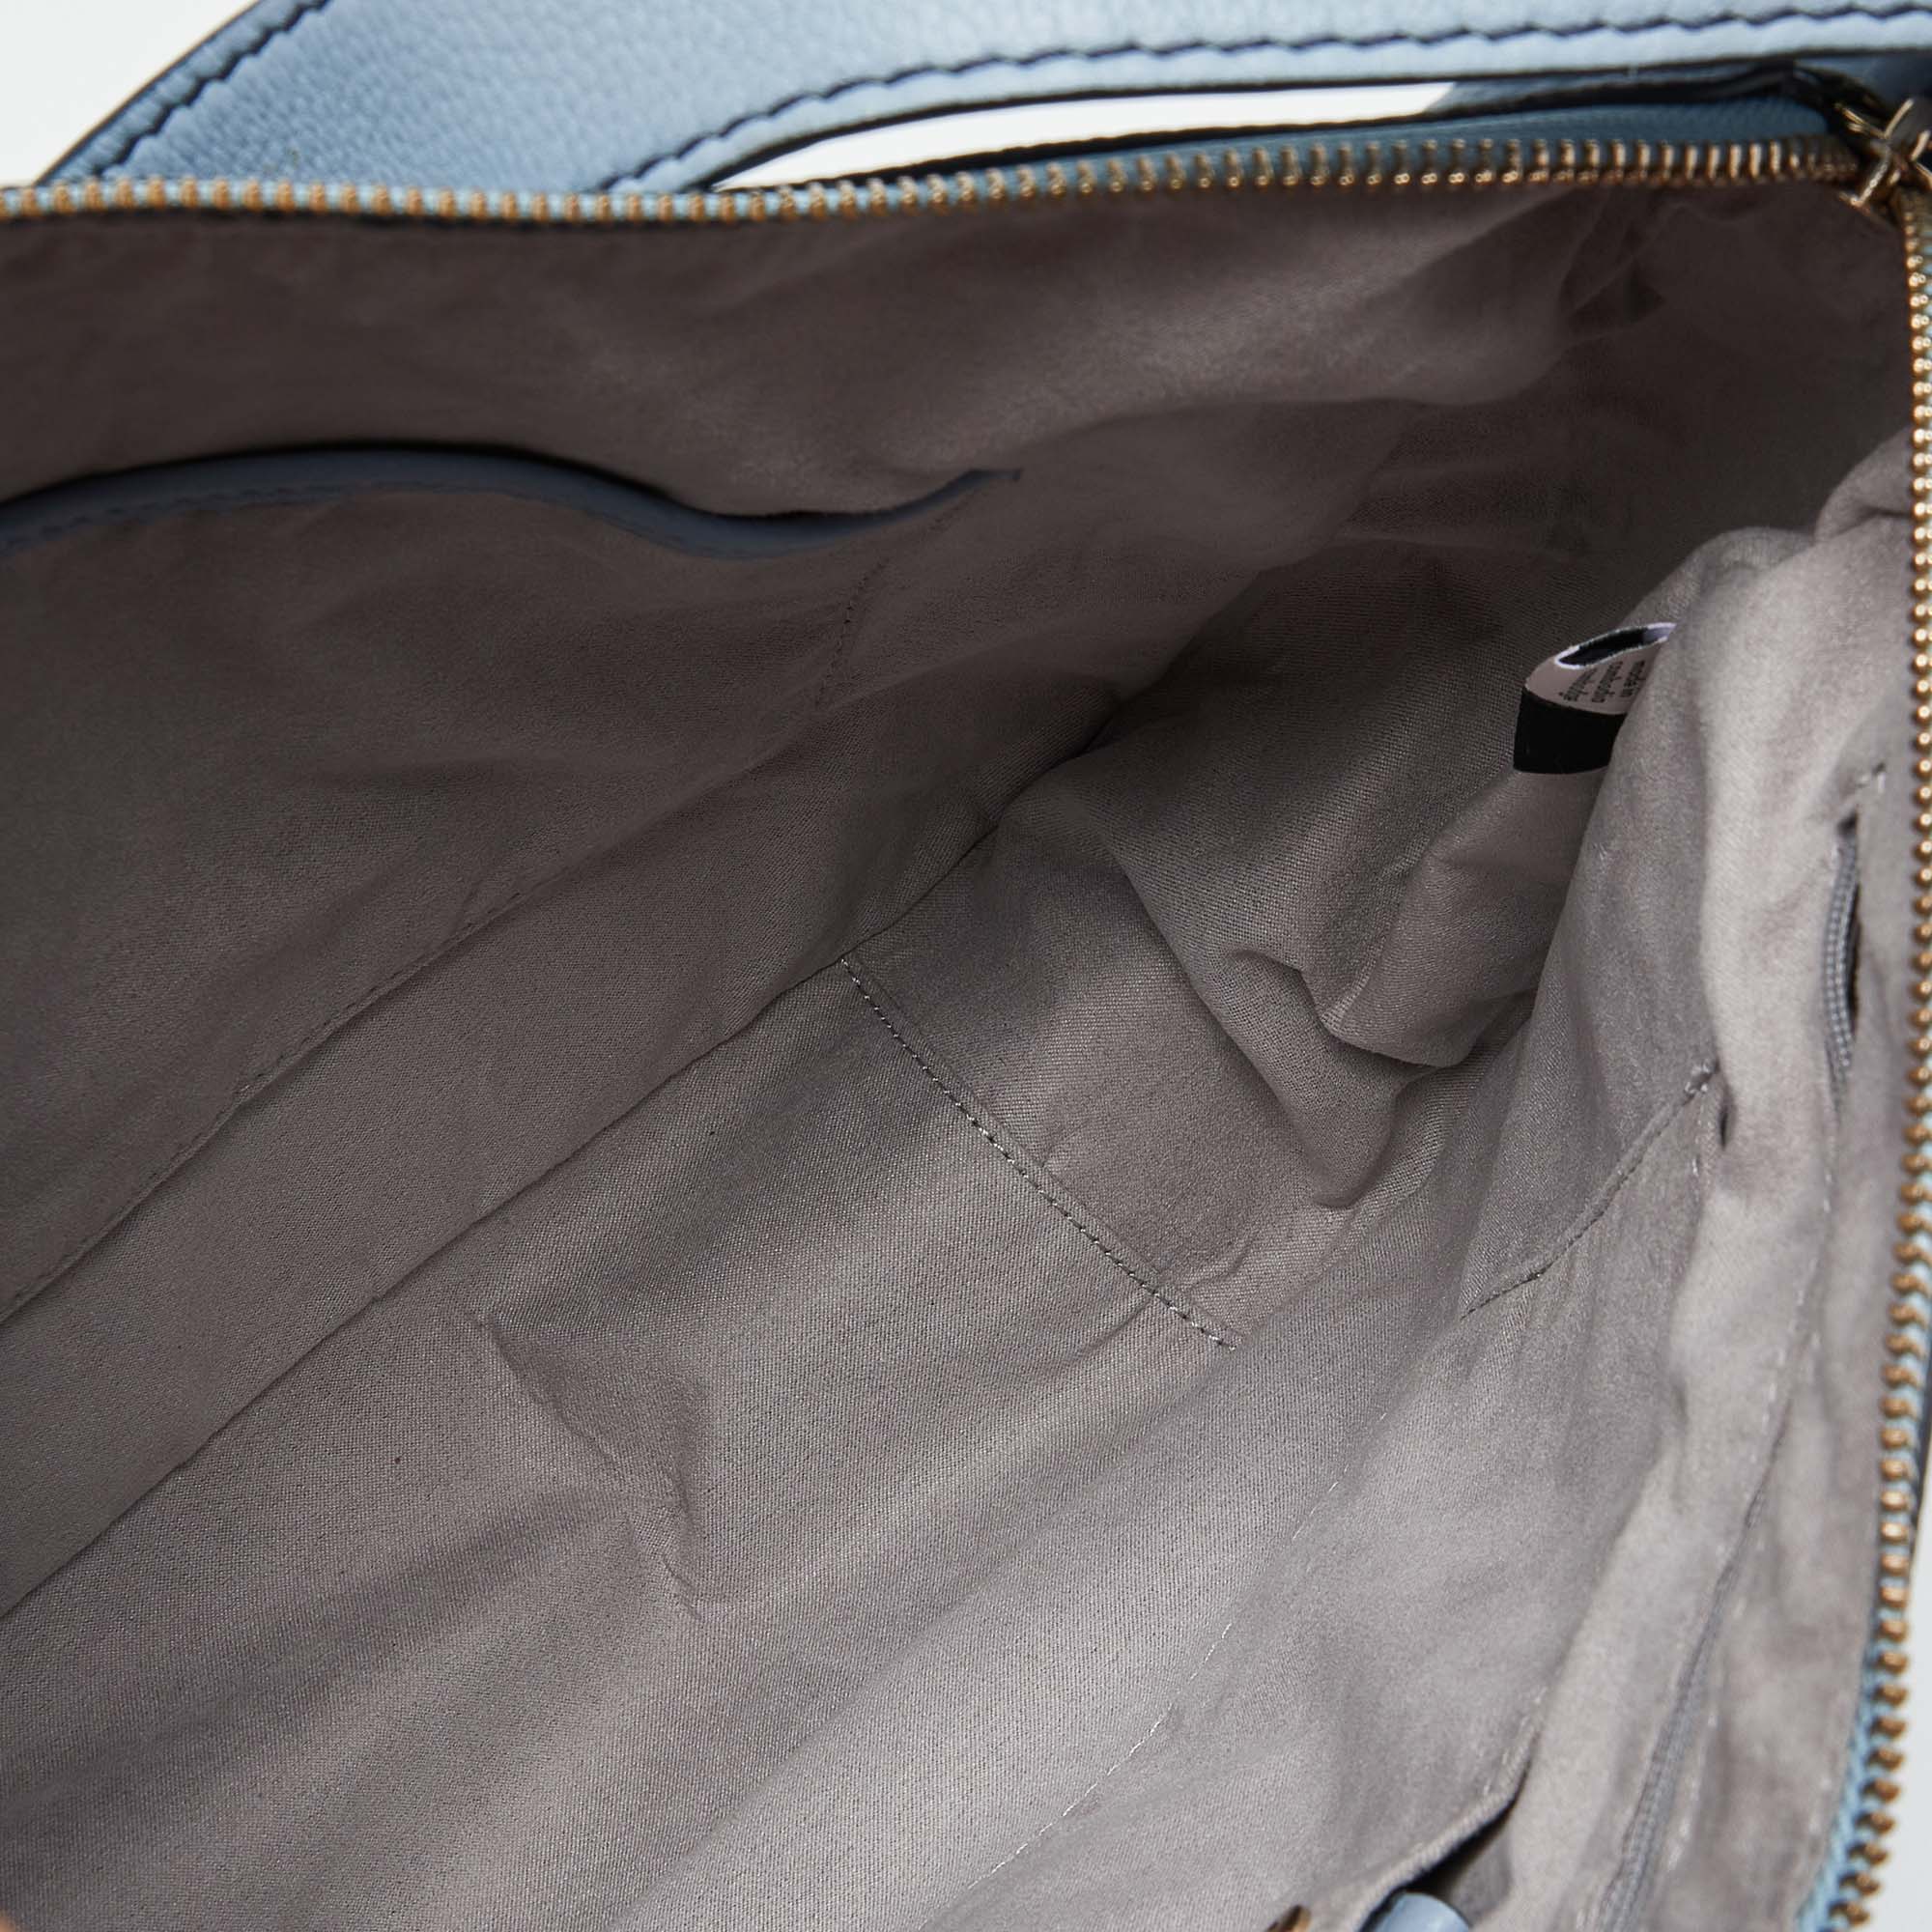 Kate Spade Blue Leather Zip Shoulder Bag